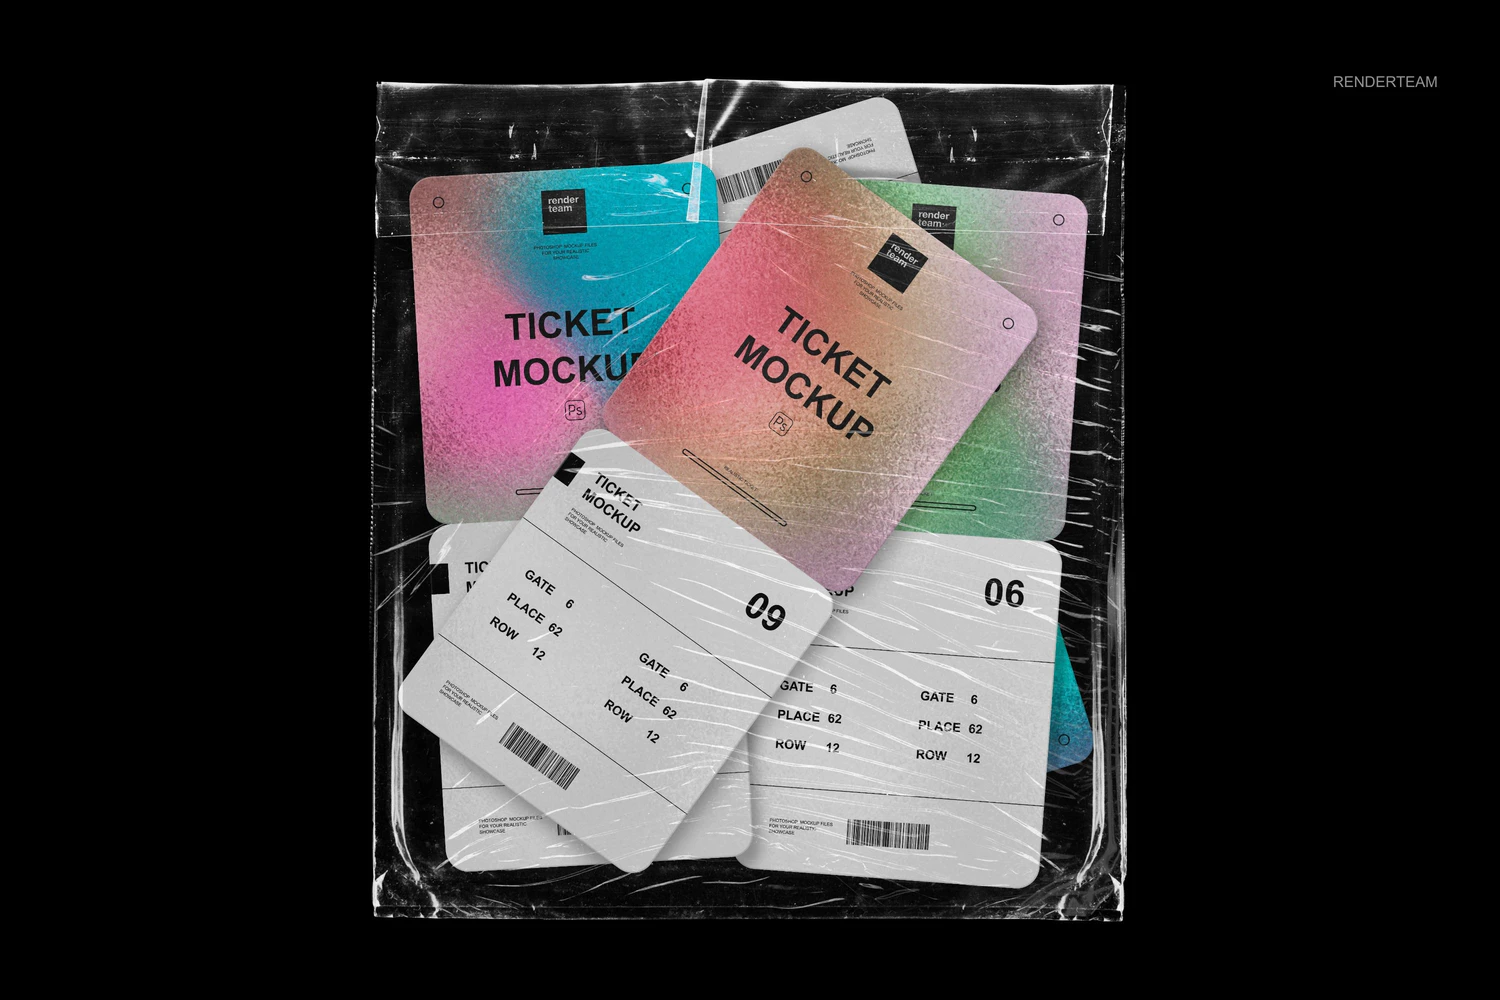 1554 潮流透明塑料薄膜包装纸门票入场券设计贴图ps样机素材展示模板Ticket Mockup